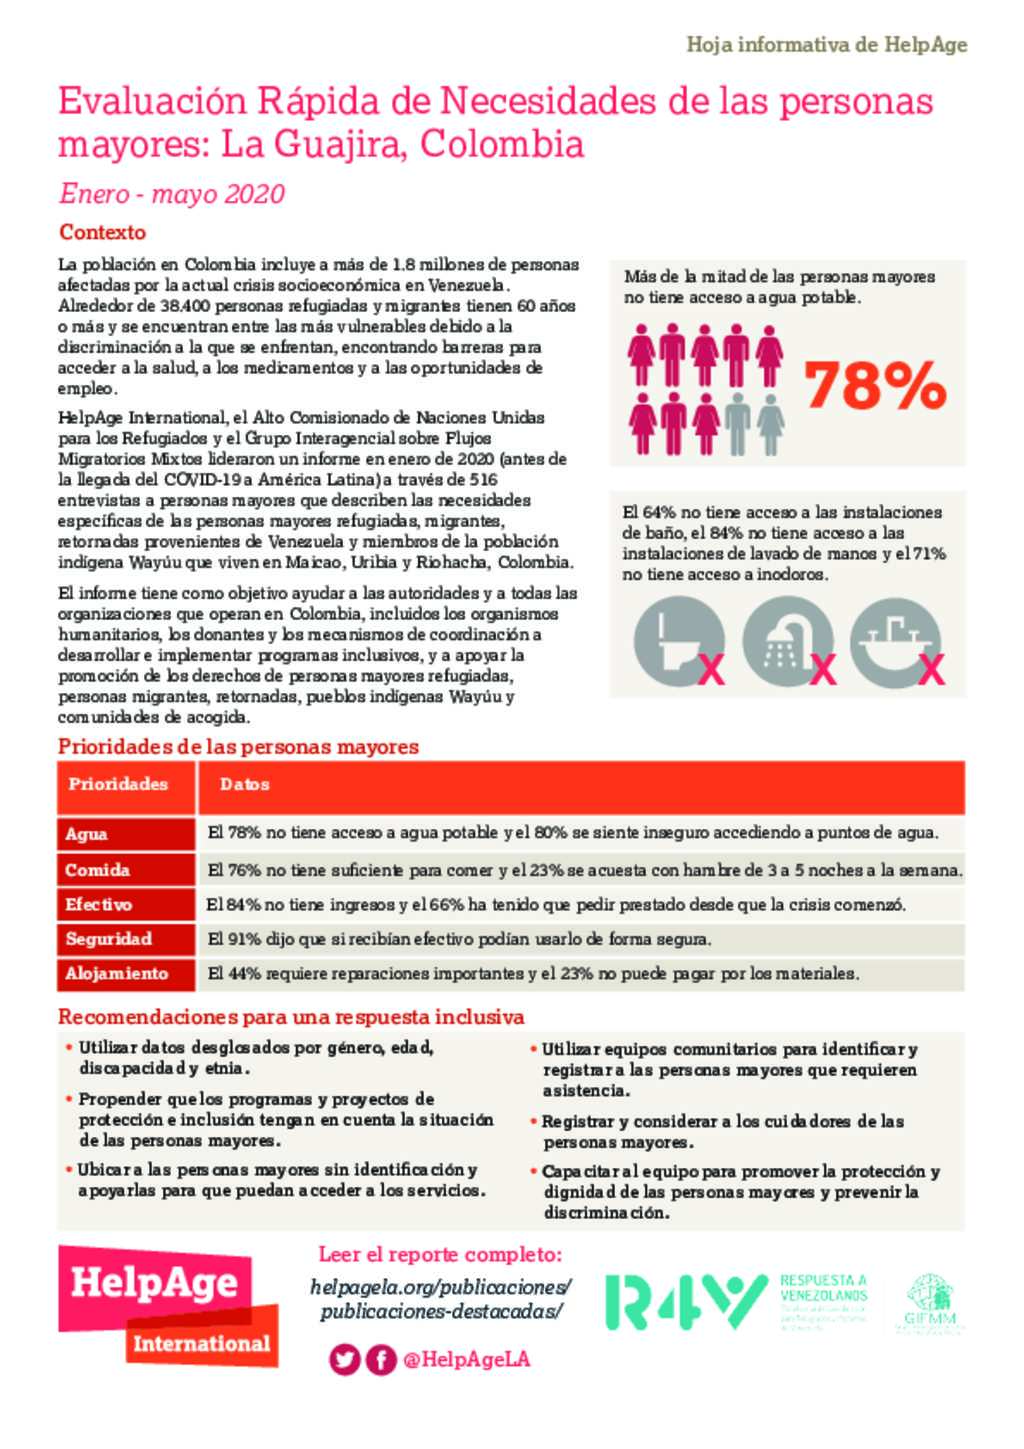 Colombia: Resumen Ejecutivo - Evaluación rápida de necesidades para las  personas mayores - HelpAge International | R4V